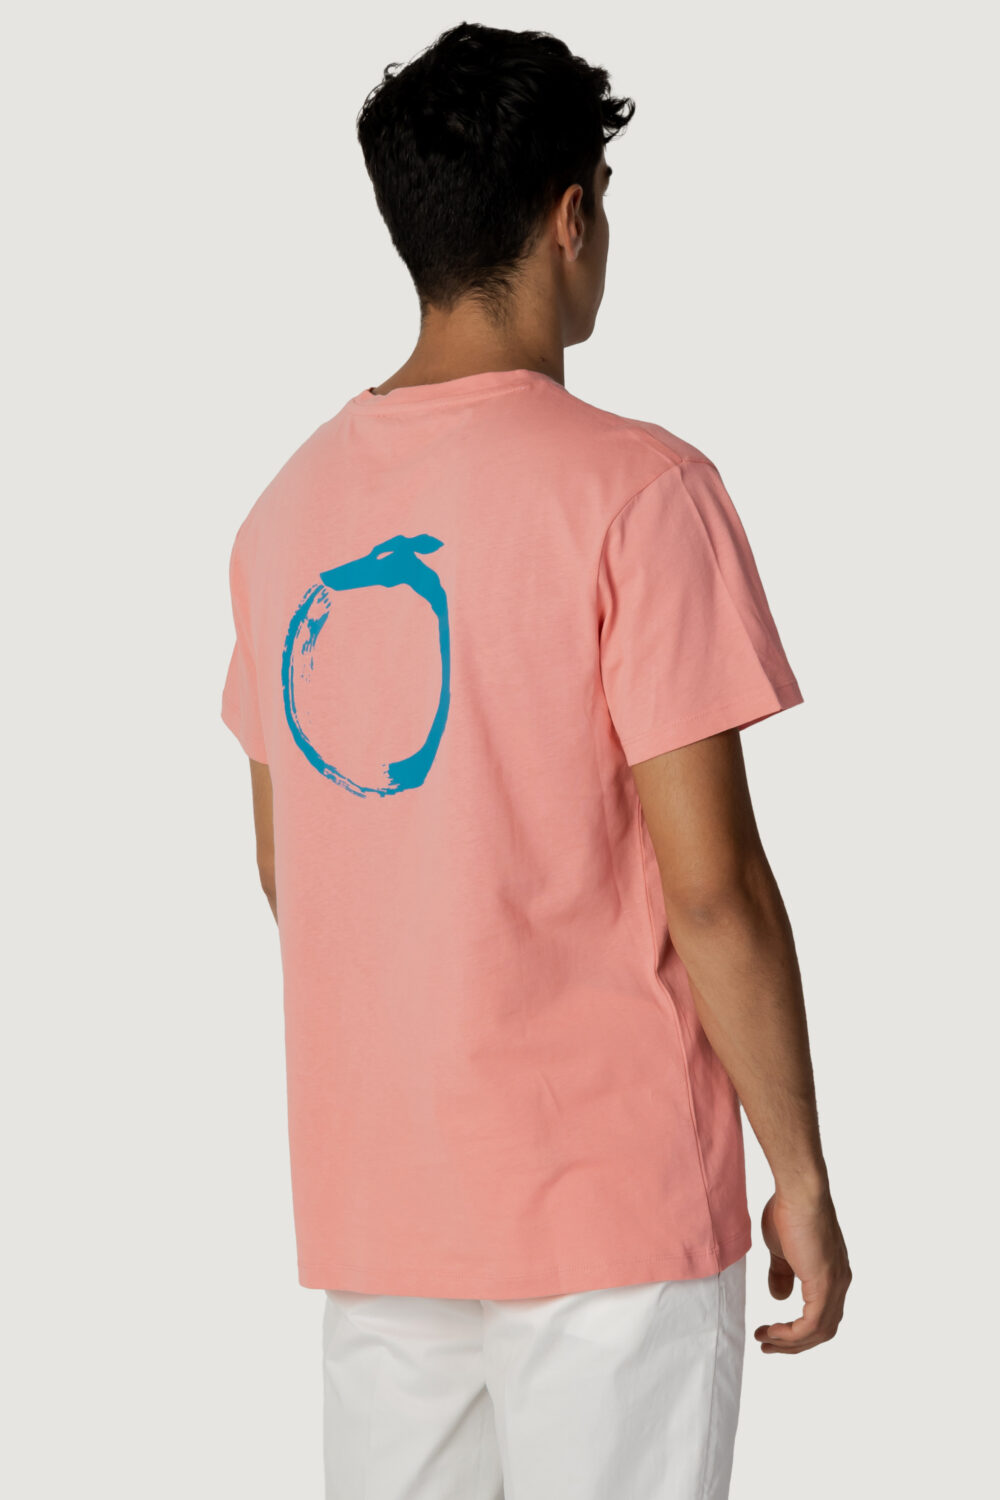 T-shirt Trussardi Beachwear logo Pesca - Foto 3